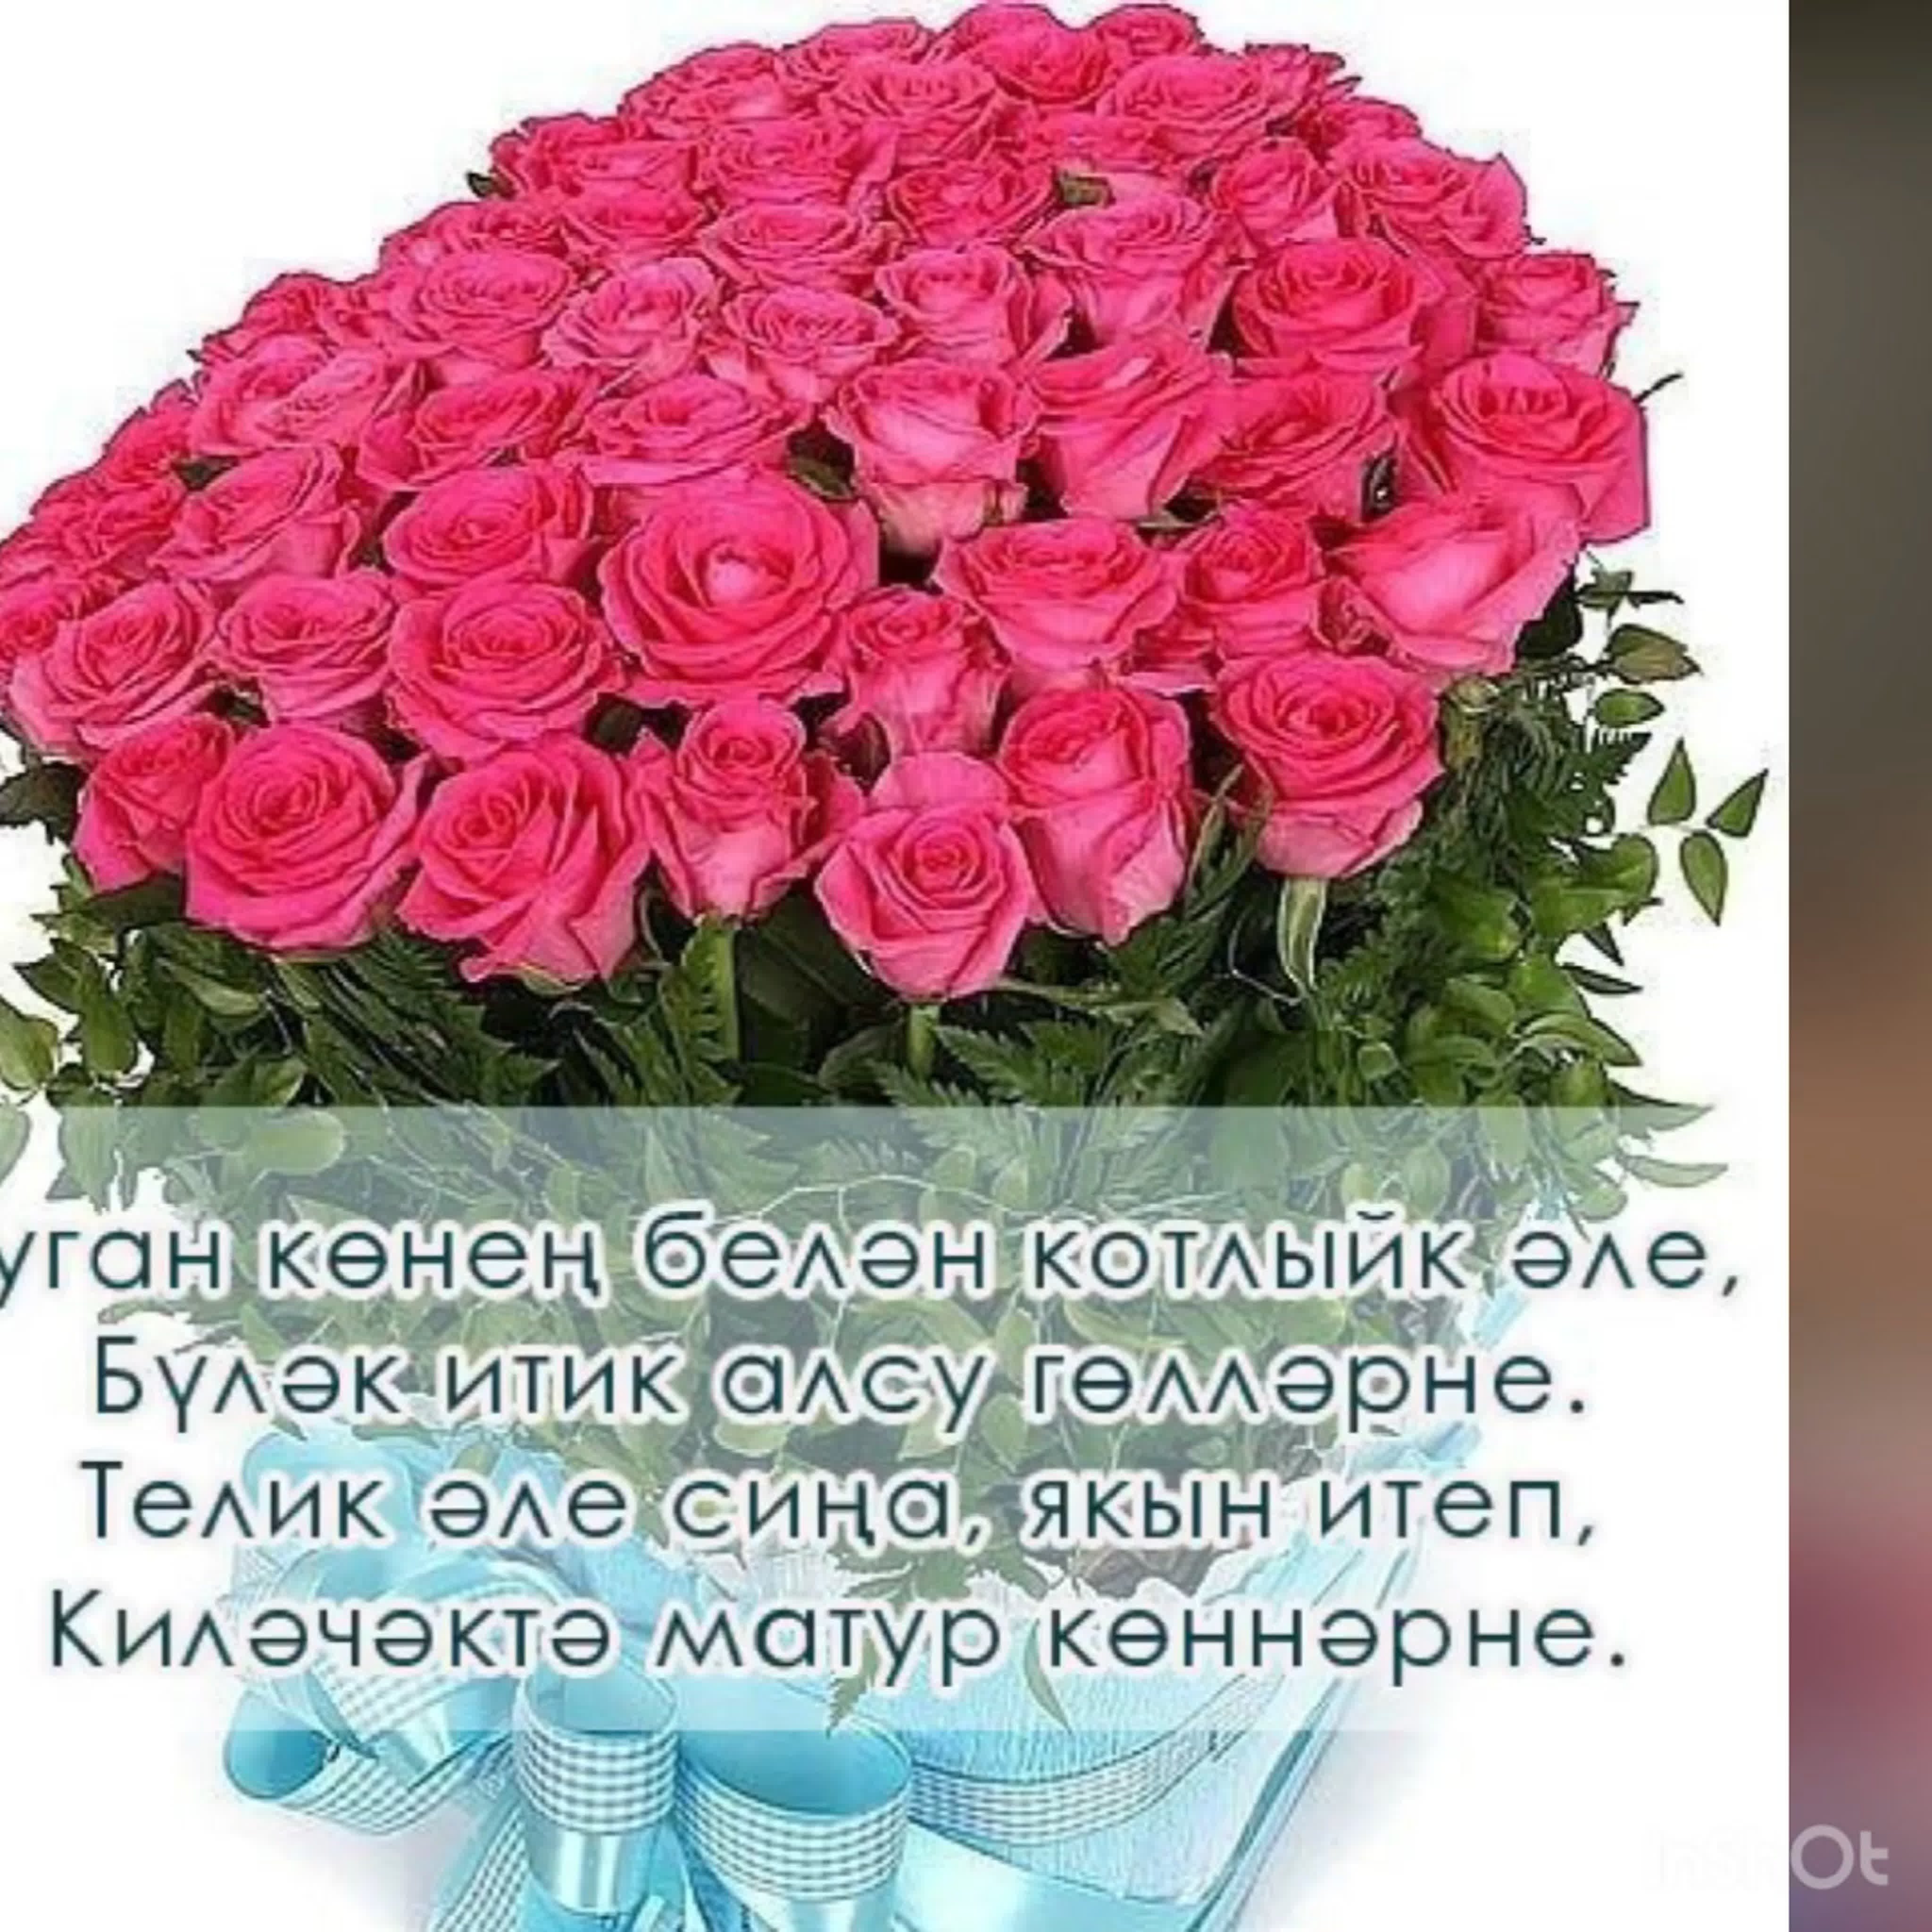 Поздравление на татарском языке подруге. Поздравления с днём рождения на татарском языке. Поздравления с днём рождения женщине на татарском языке. Поздравления с днём рождения женщине на татарском. Поздравления с днём рождения женщине на татарском я.